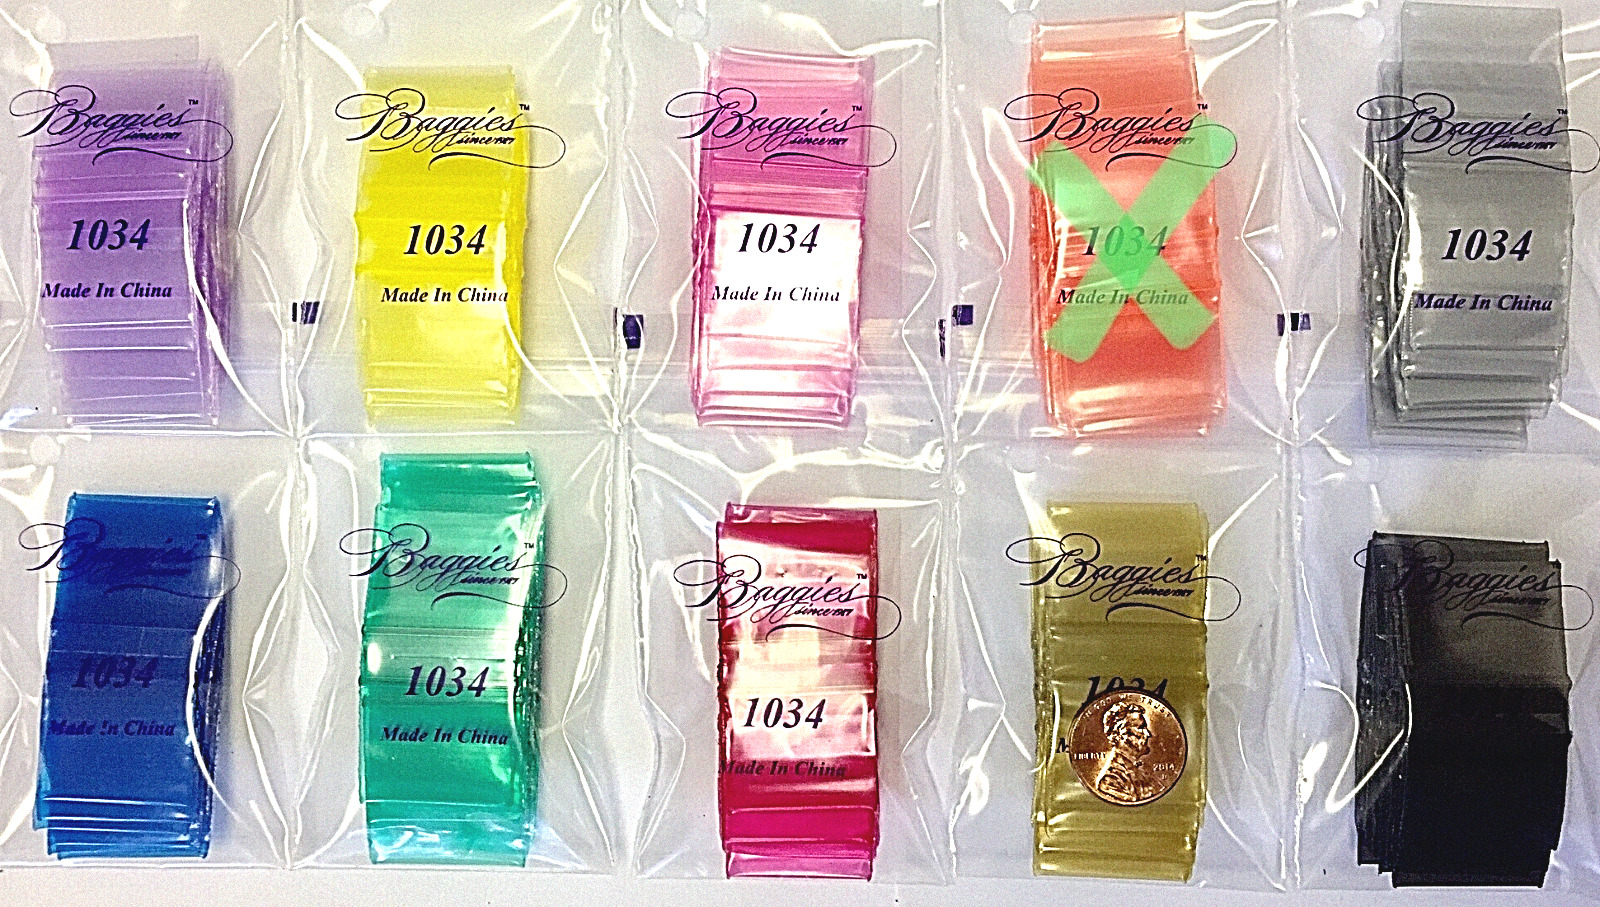 BaggiesSince1987 - 1034 Zip Color Bags 1000PCS = 9C/900 + 25D/100, READ DETAILS